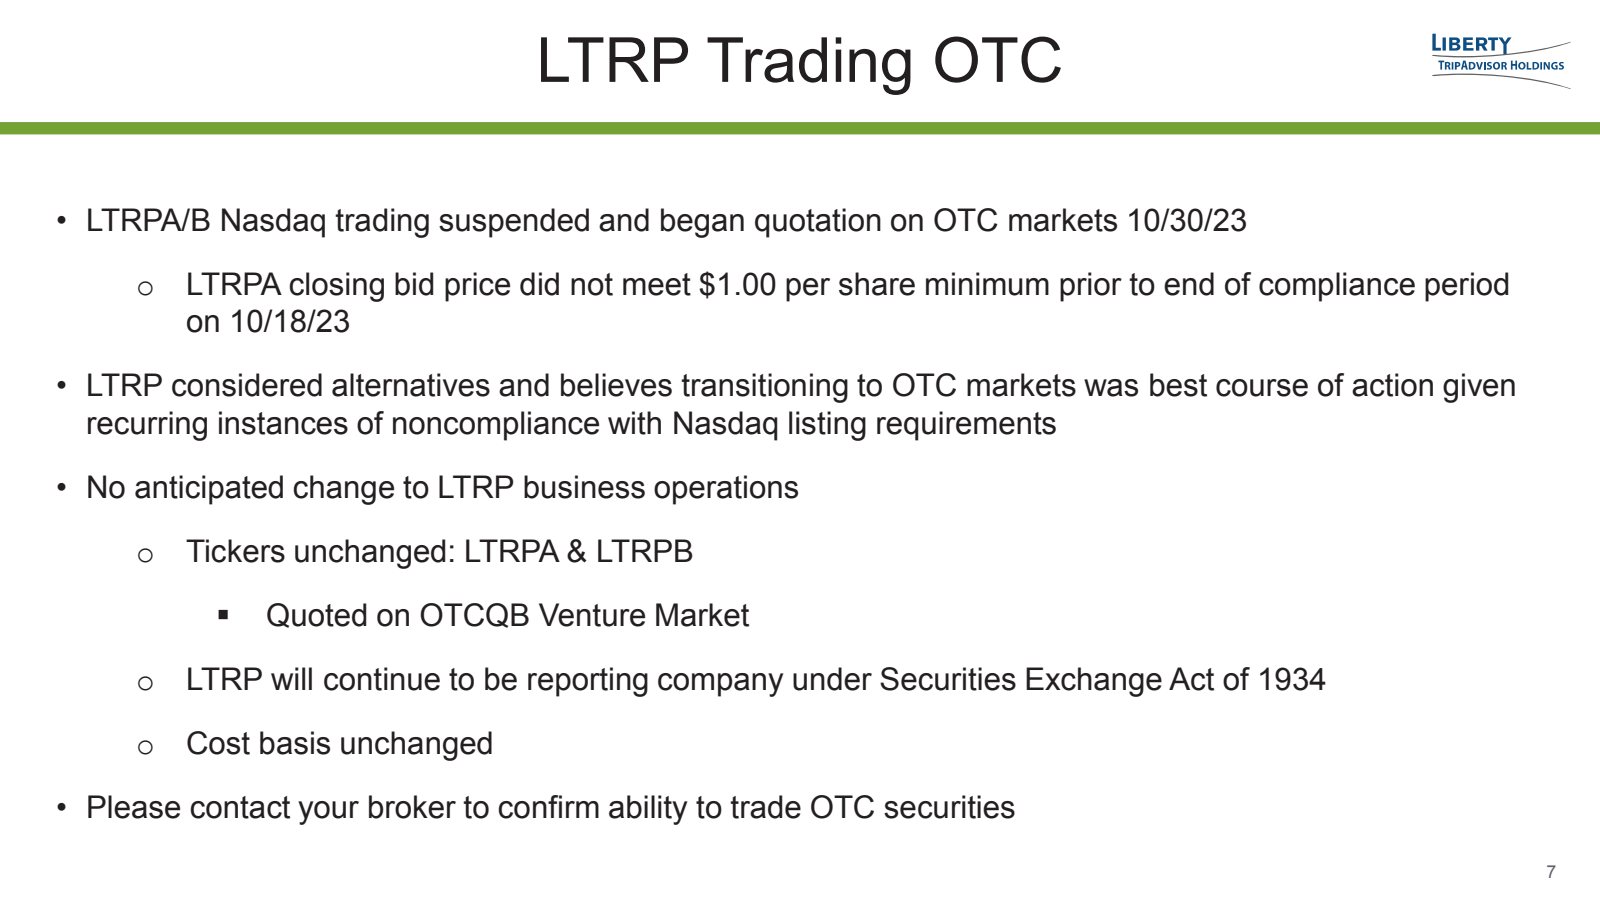 ● 

LTRP Trading OTC